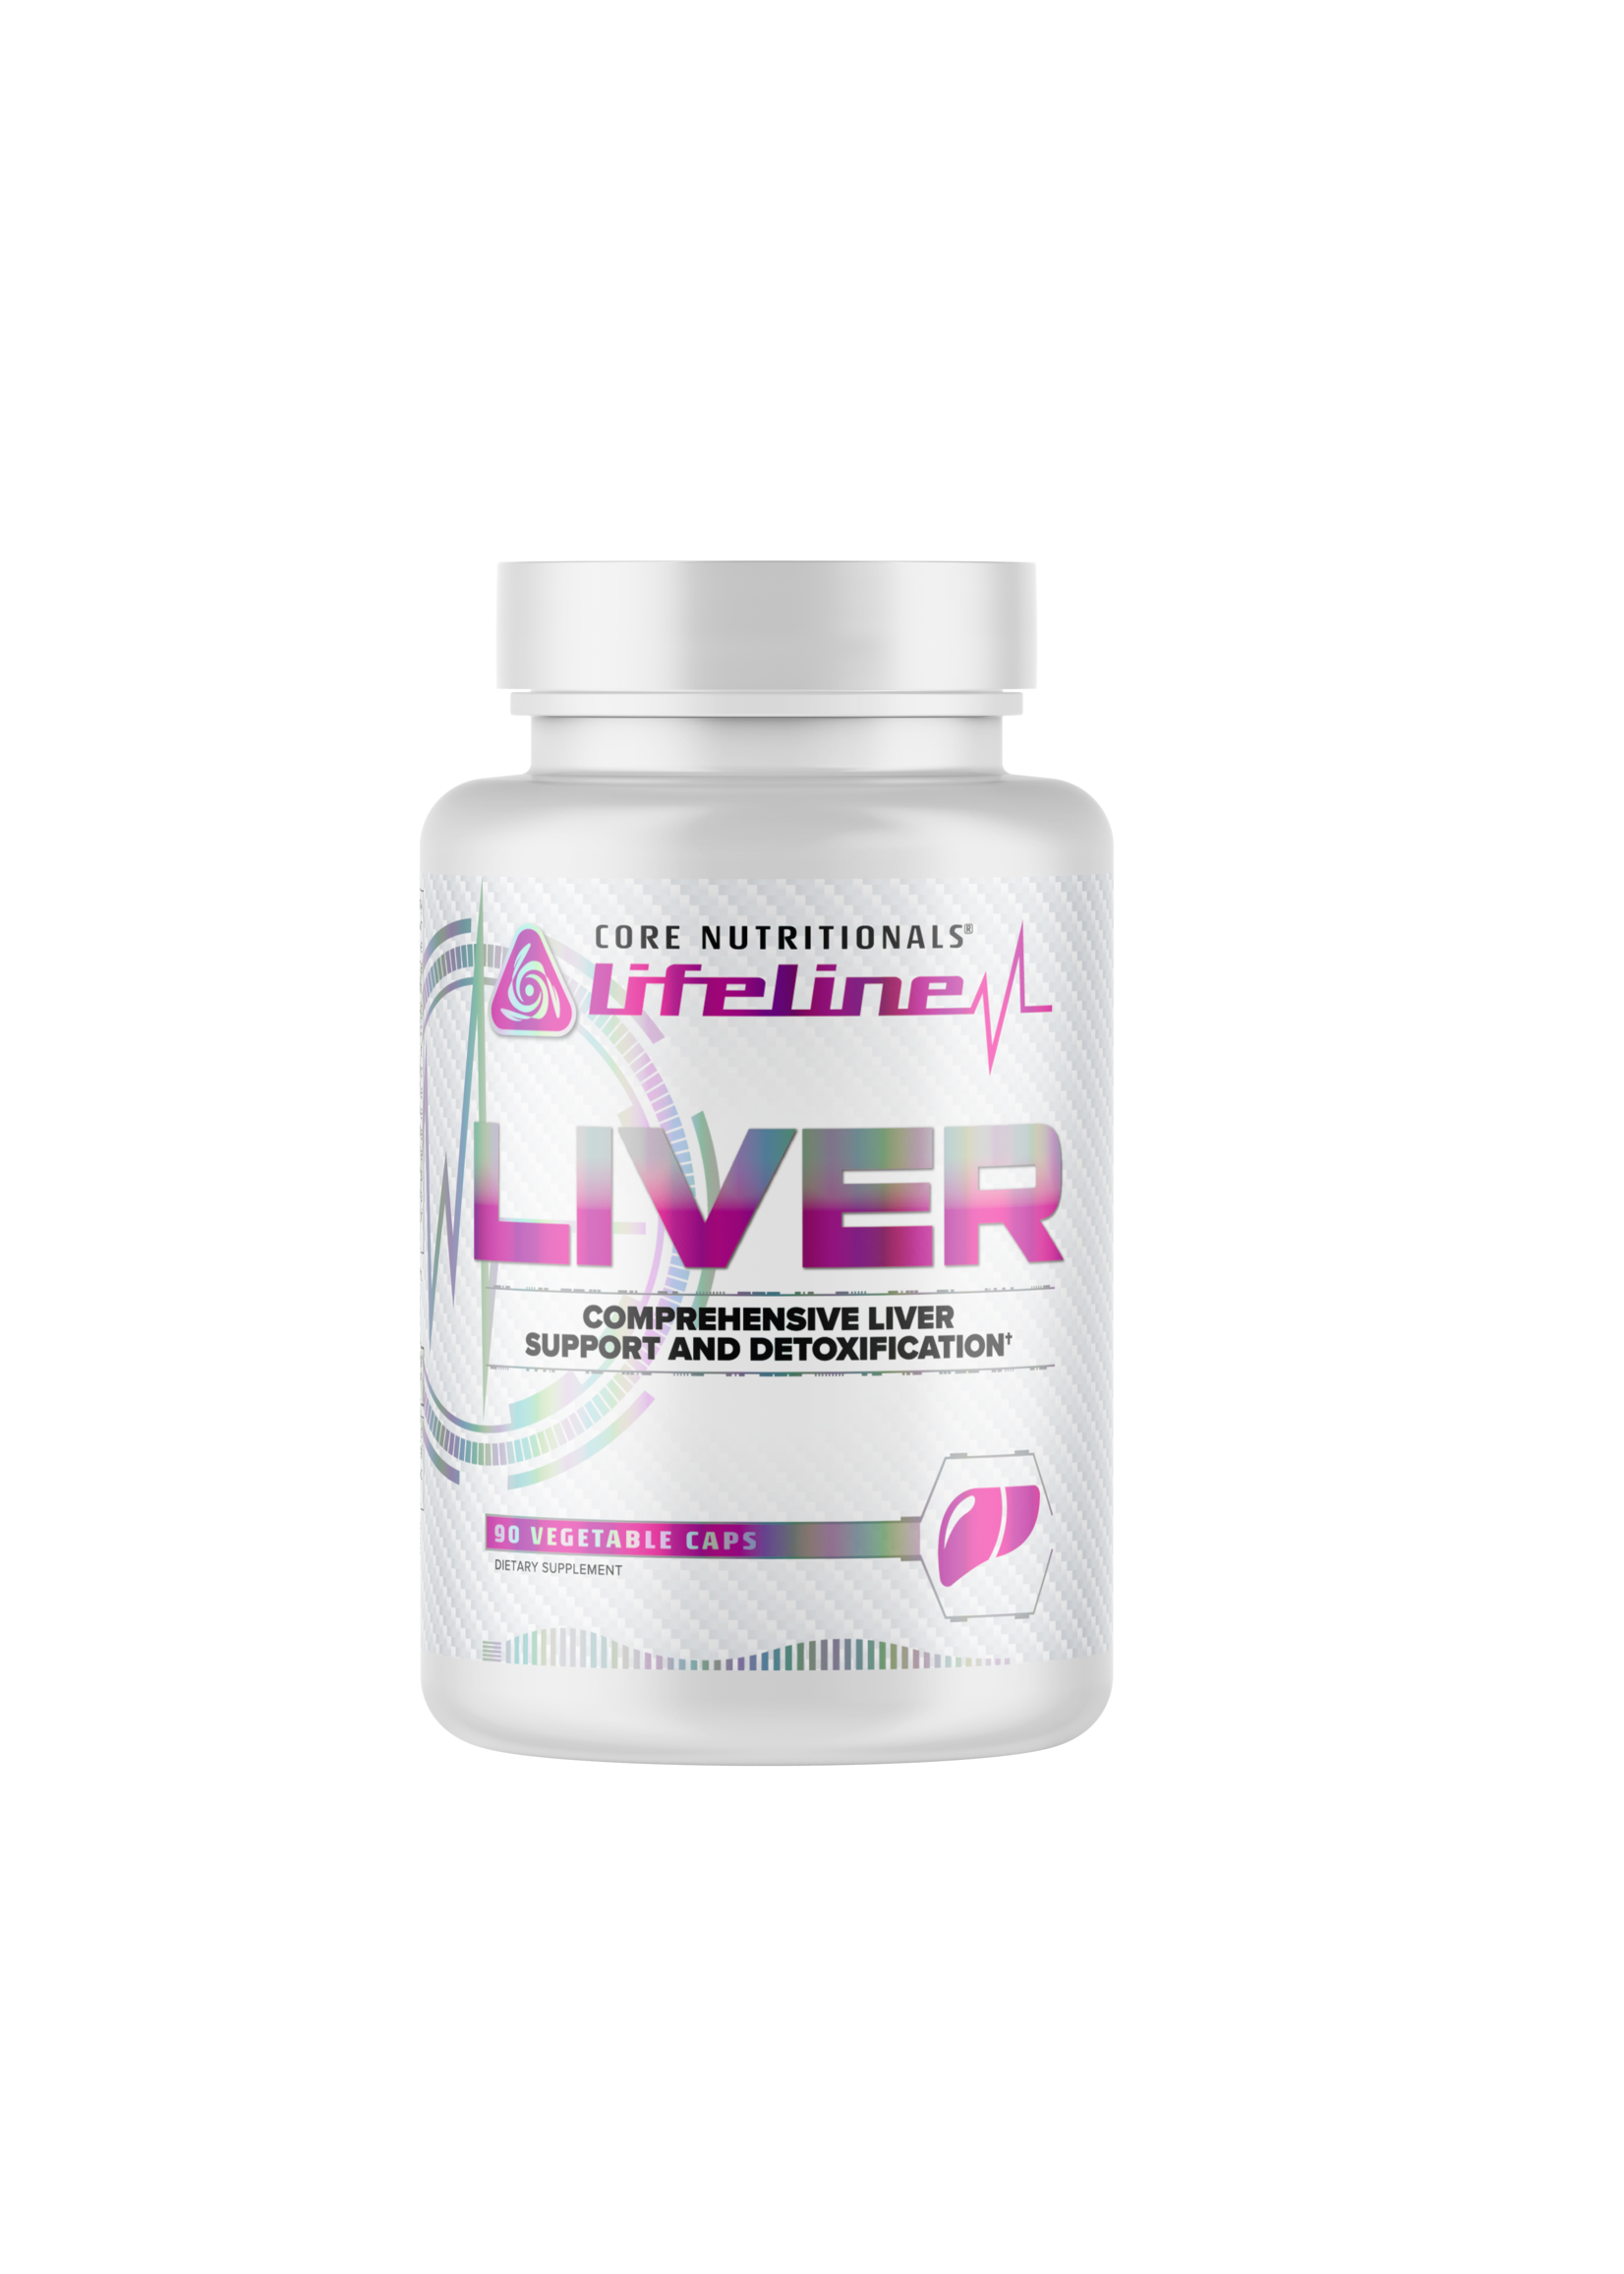 Core Nutritionals Core Liver